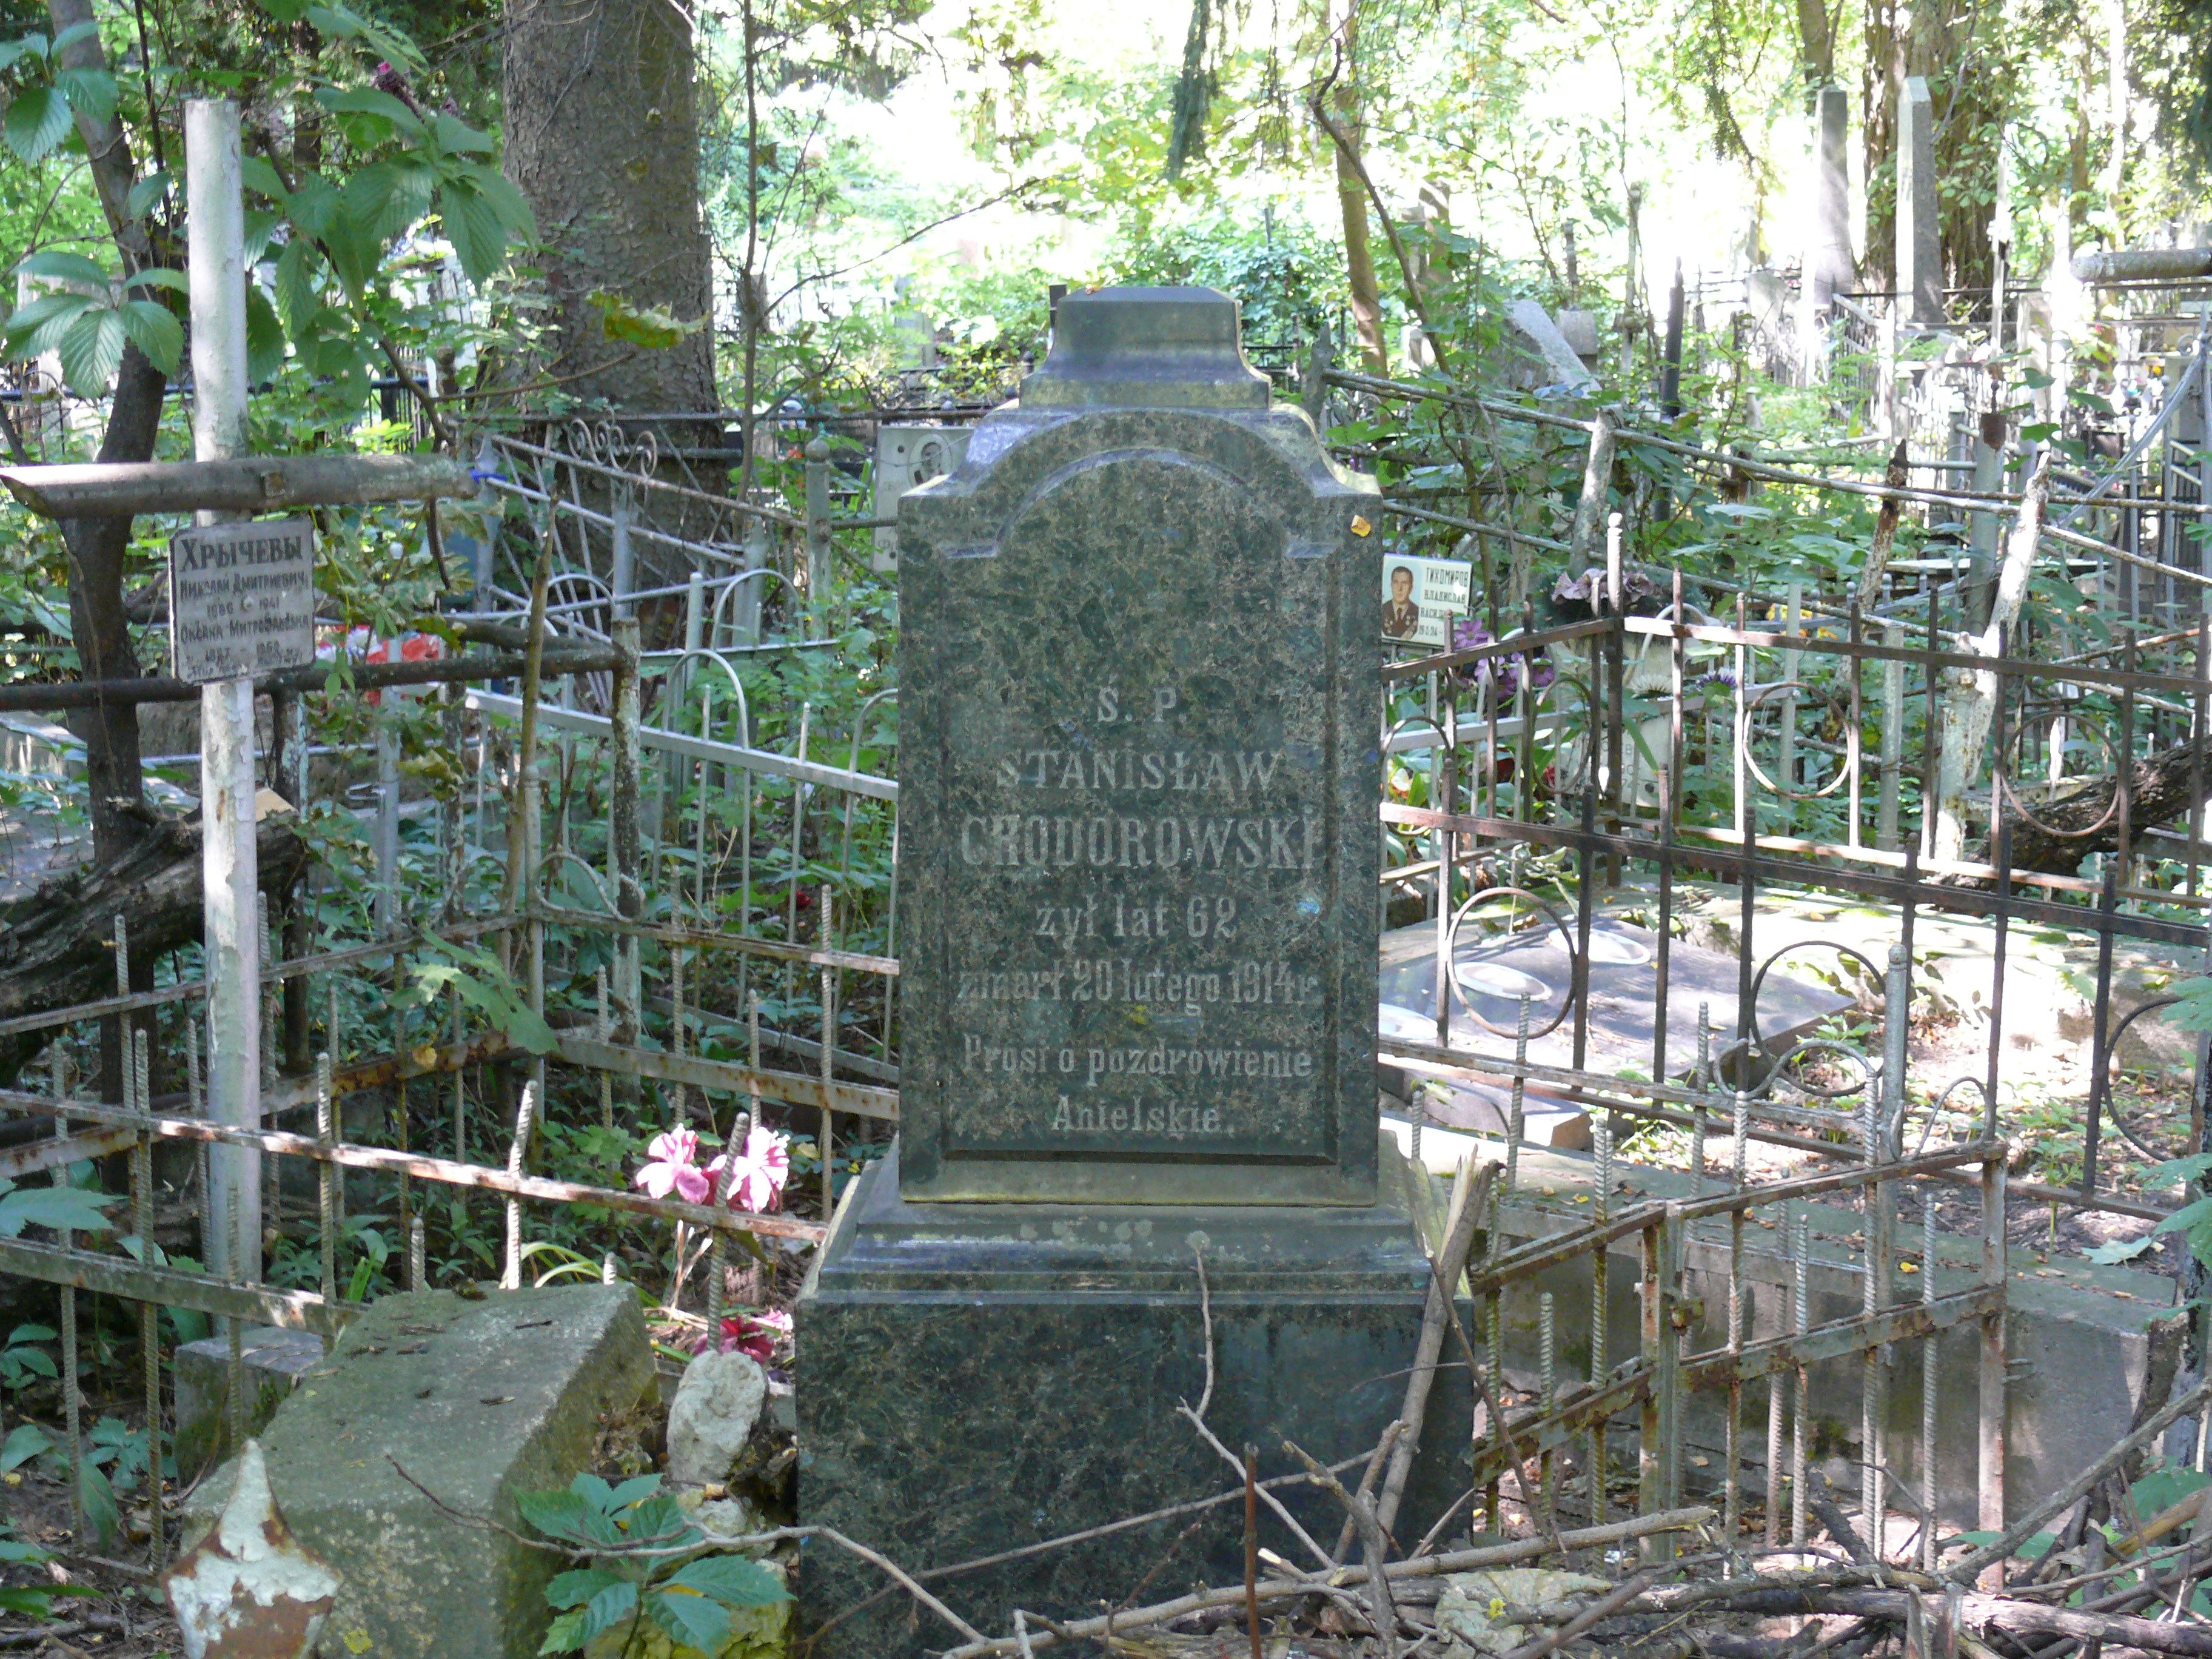 Tombstone of Stanisław Chodorowski